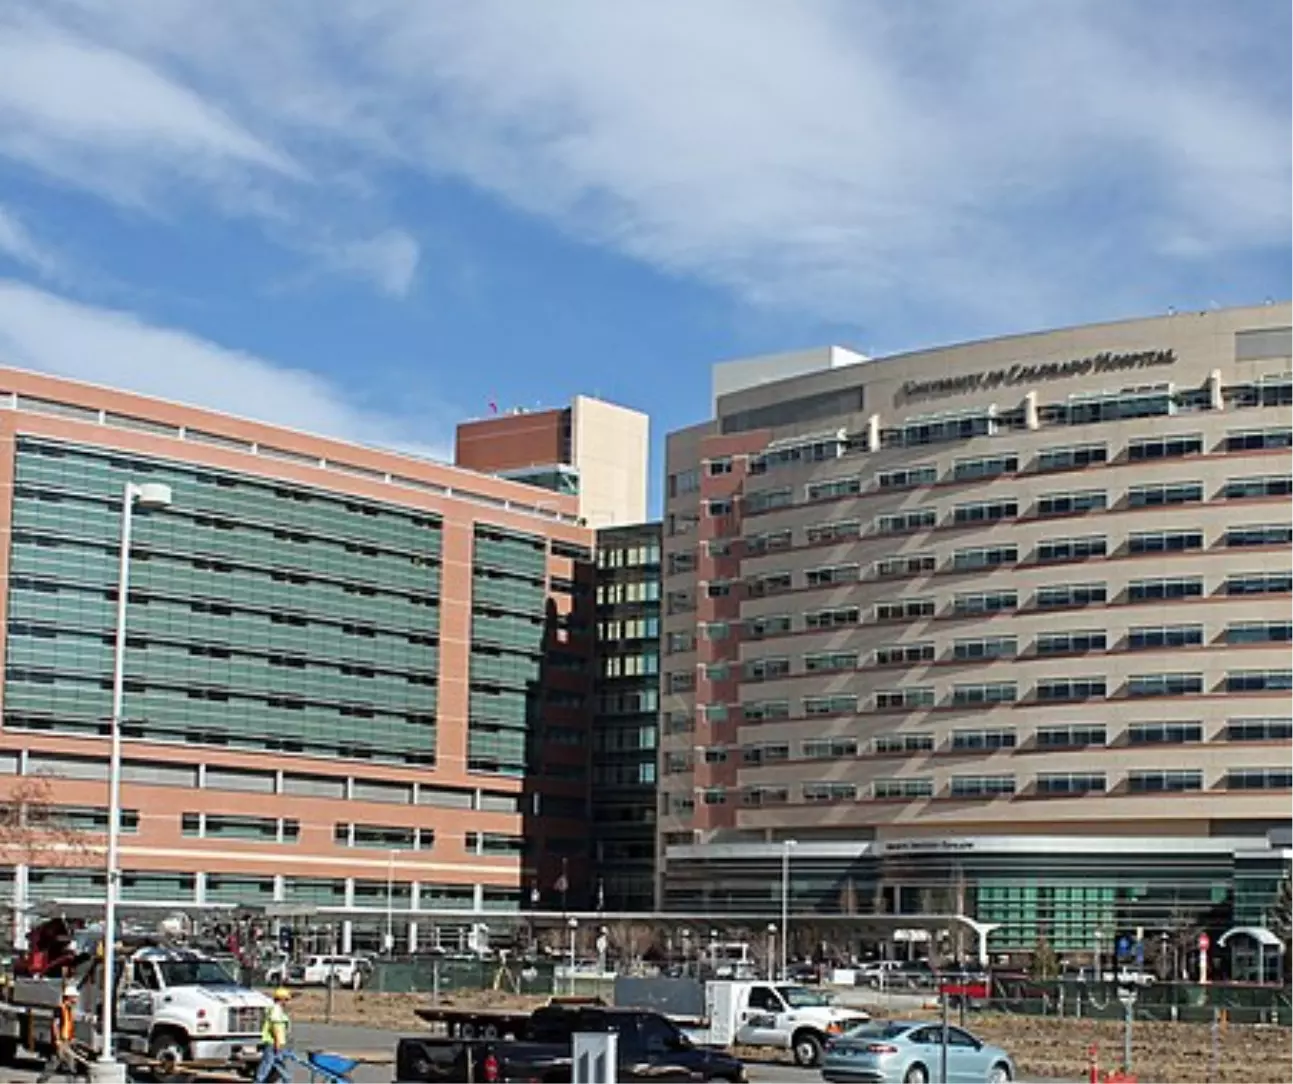 Hospitals and Medical Facilities in Boulder Colorado